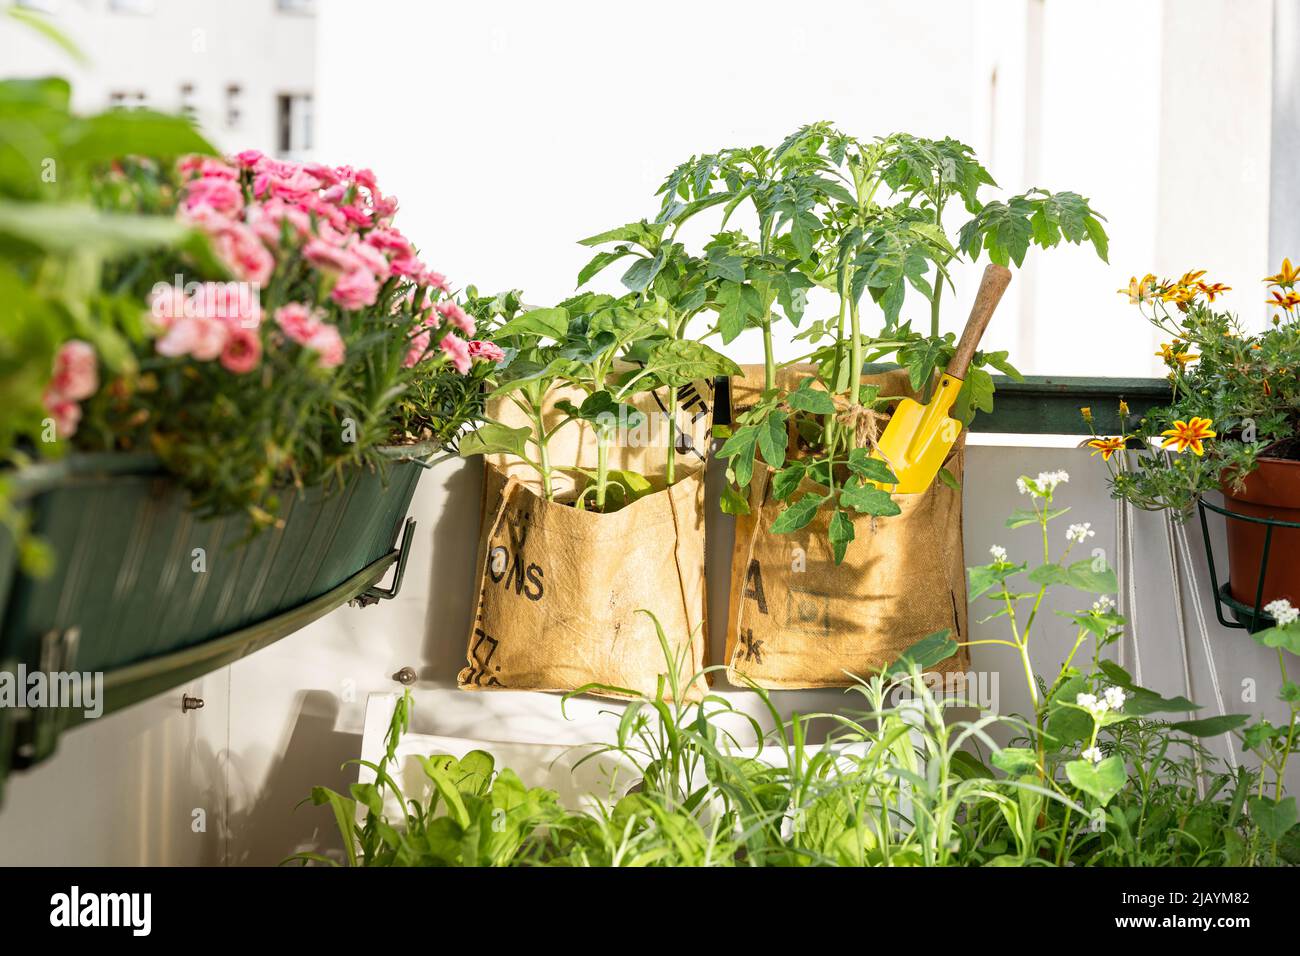 Sacs de culture recyclés pour fleurs de tomates sur le balcon. Consommation intelligente de produits à durée limitée. Concept zéro déchet et durabilité Banque D'Images